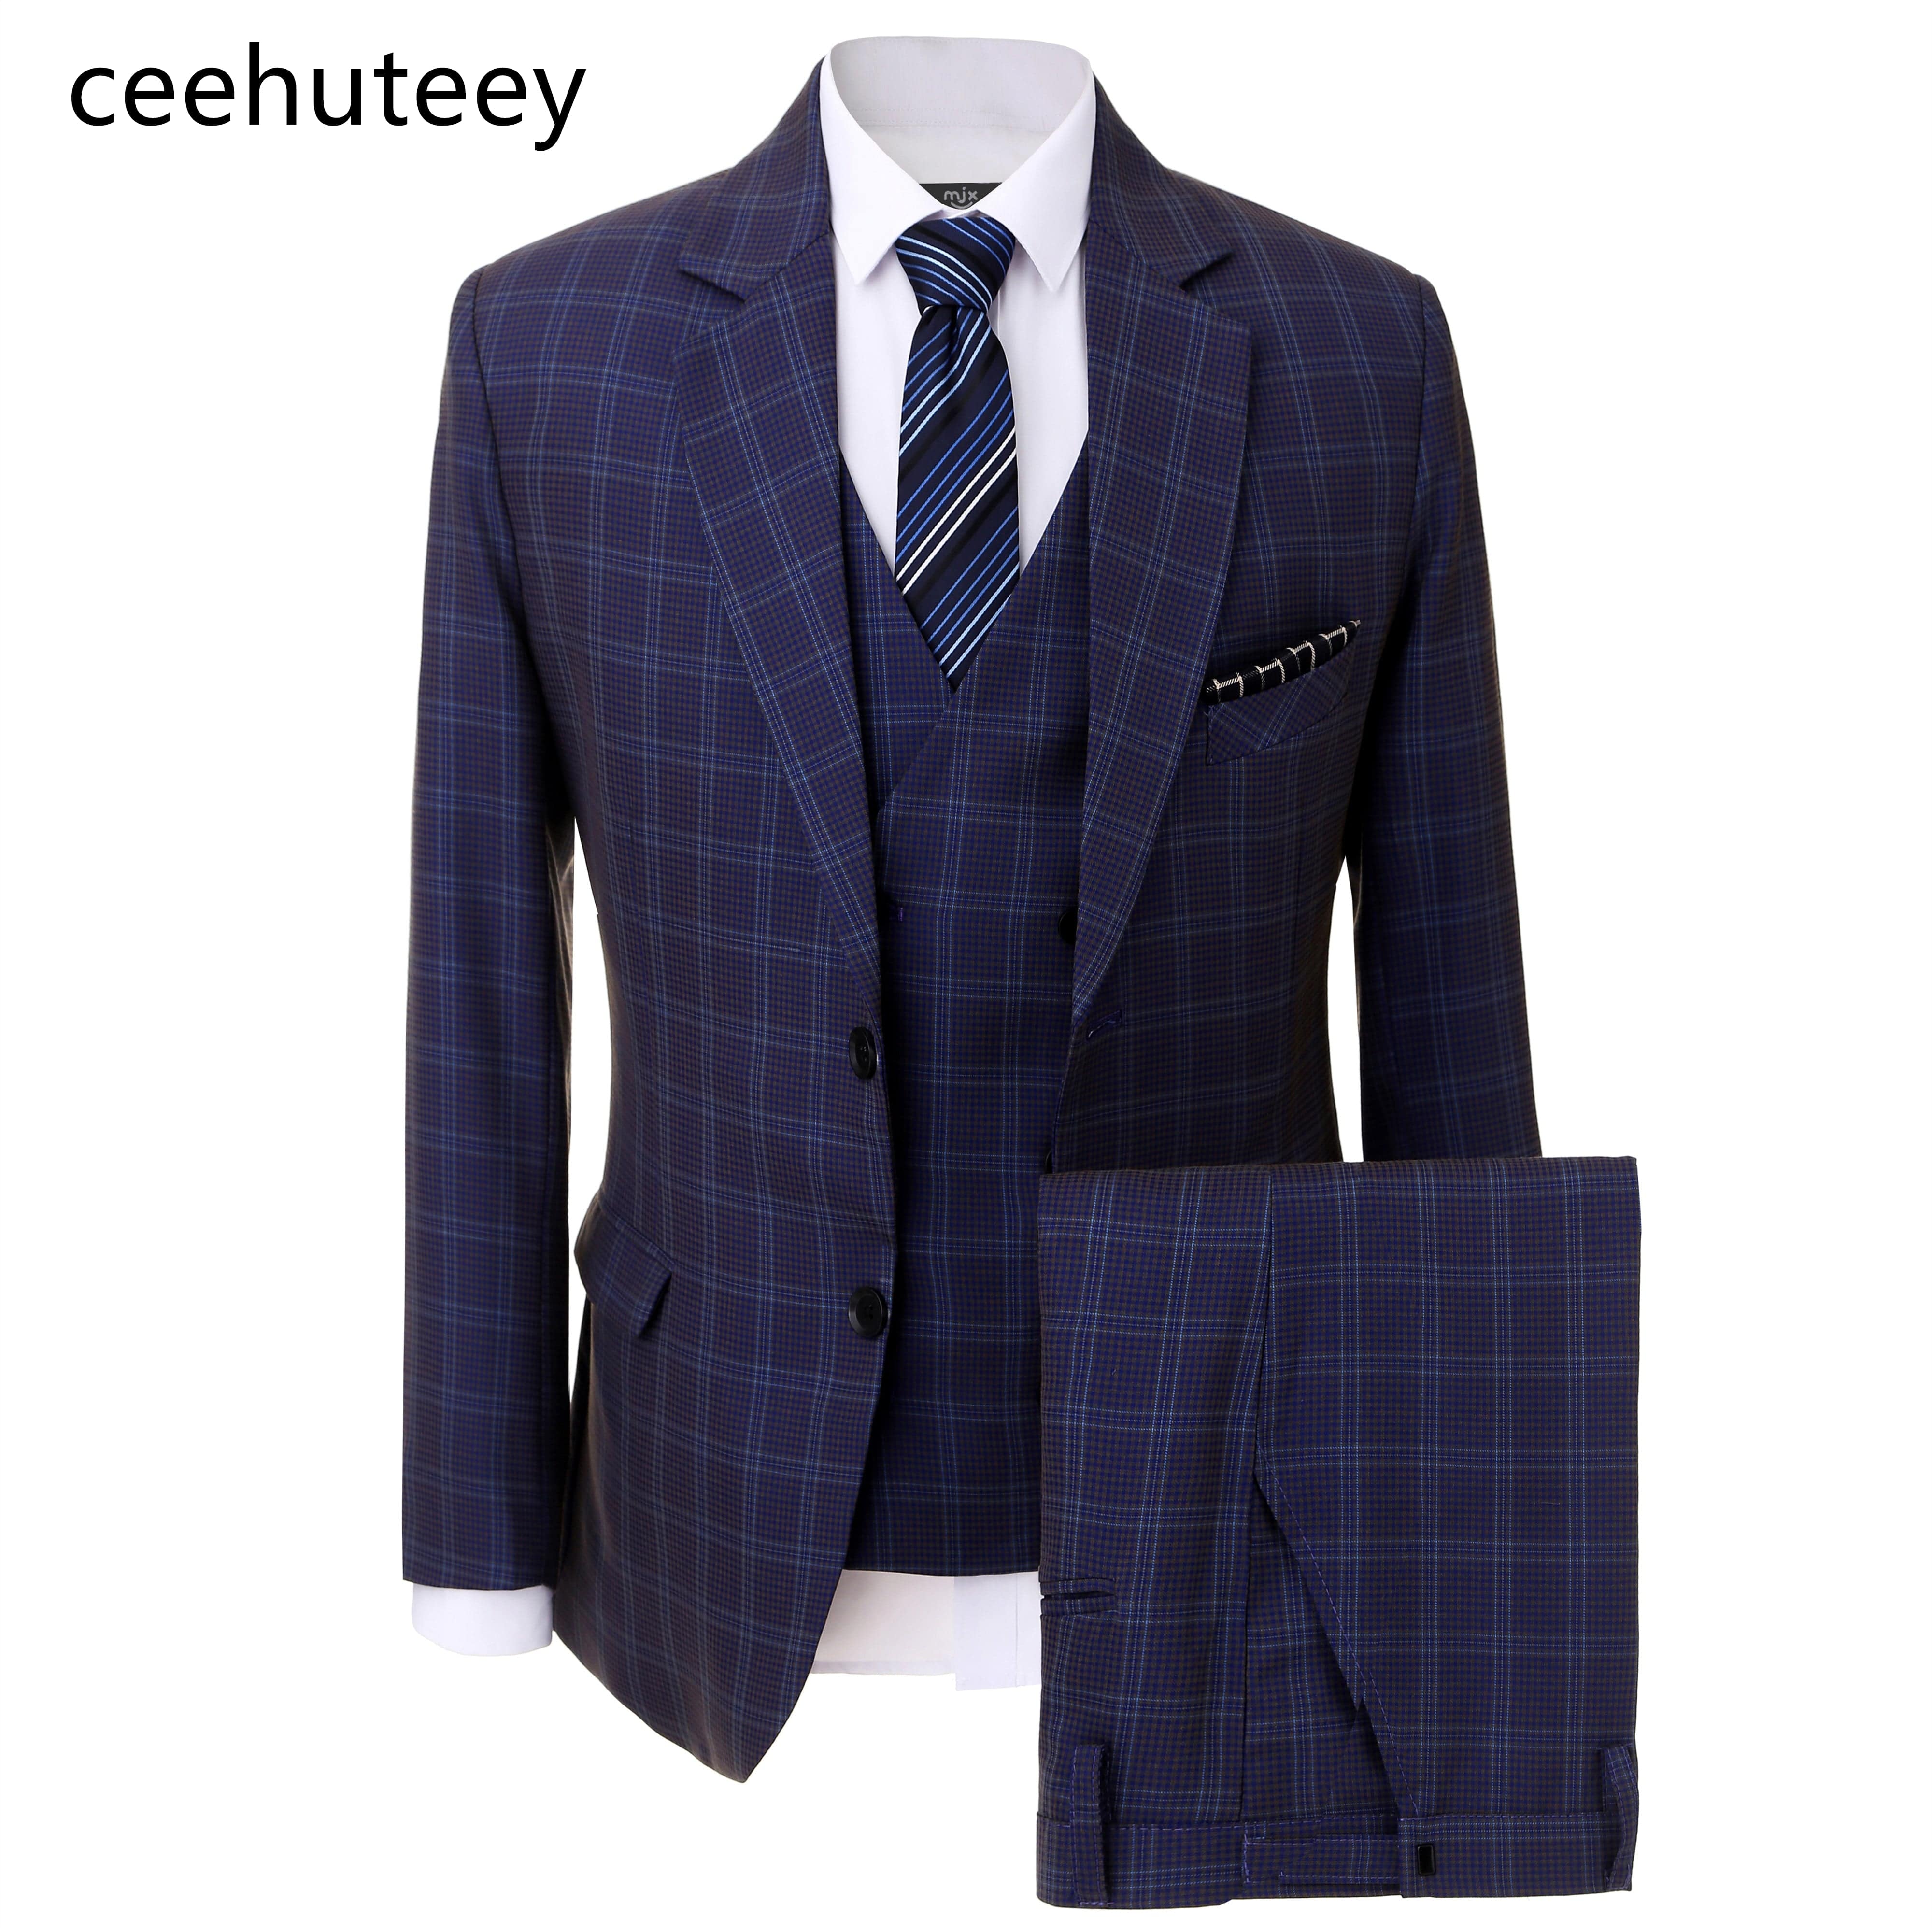 ceehuteey Formal Plaid Men's Business 3 Pieces Tweed  Notch Lapel Suit (Blazer+vest+Pants)